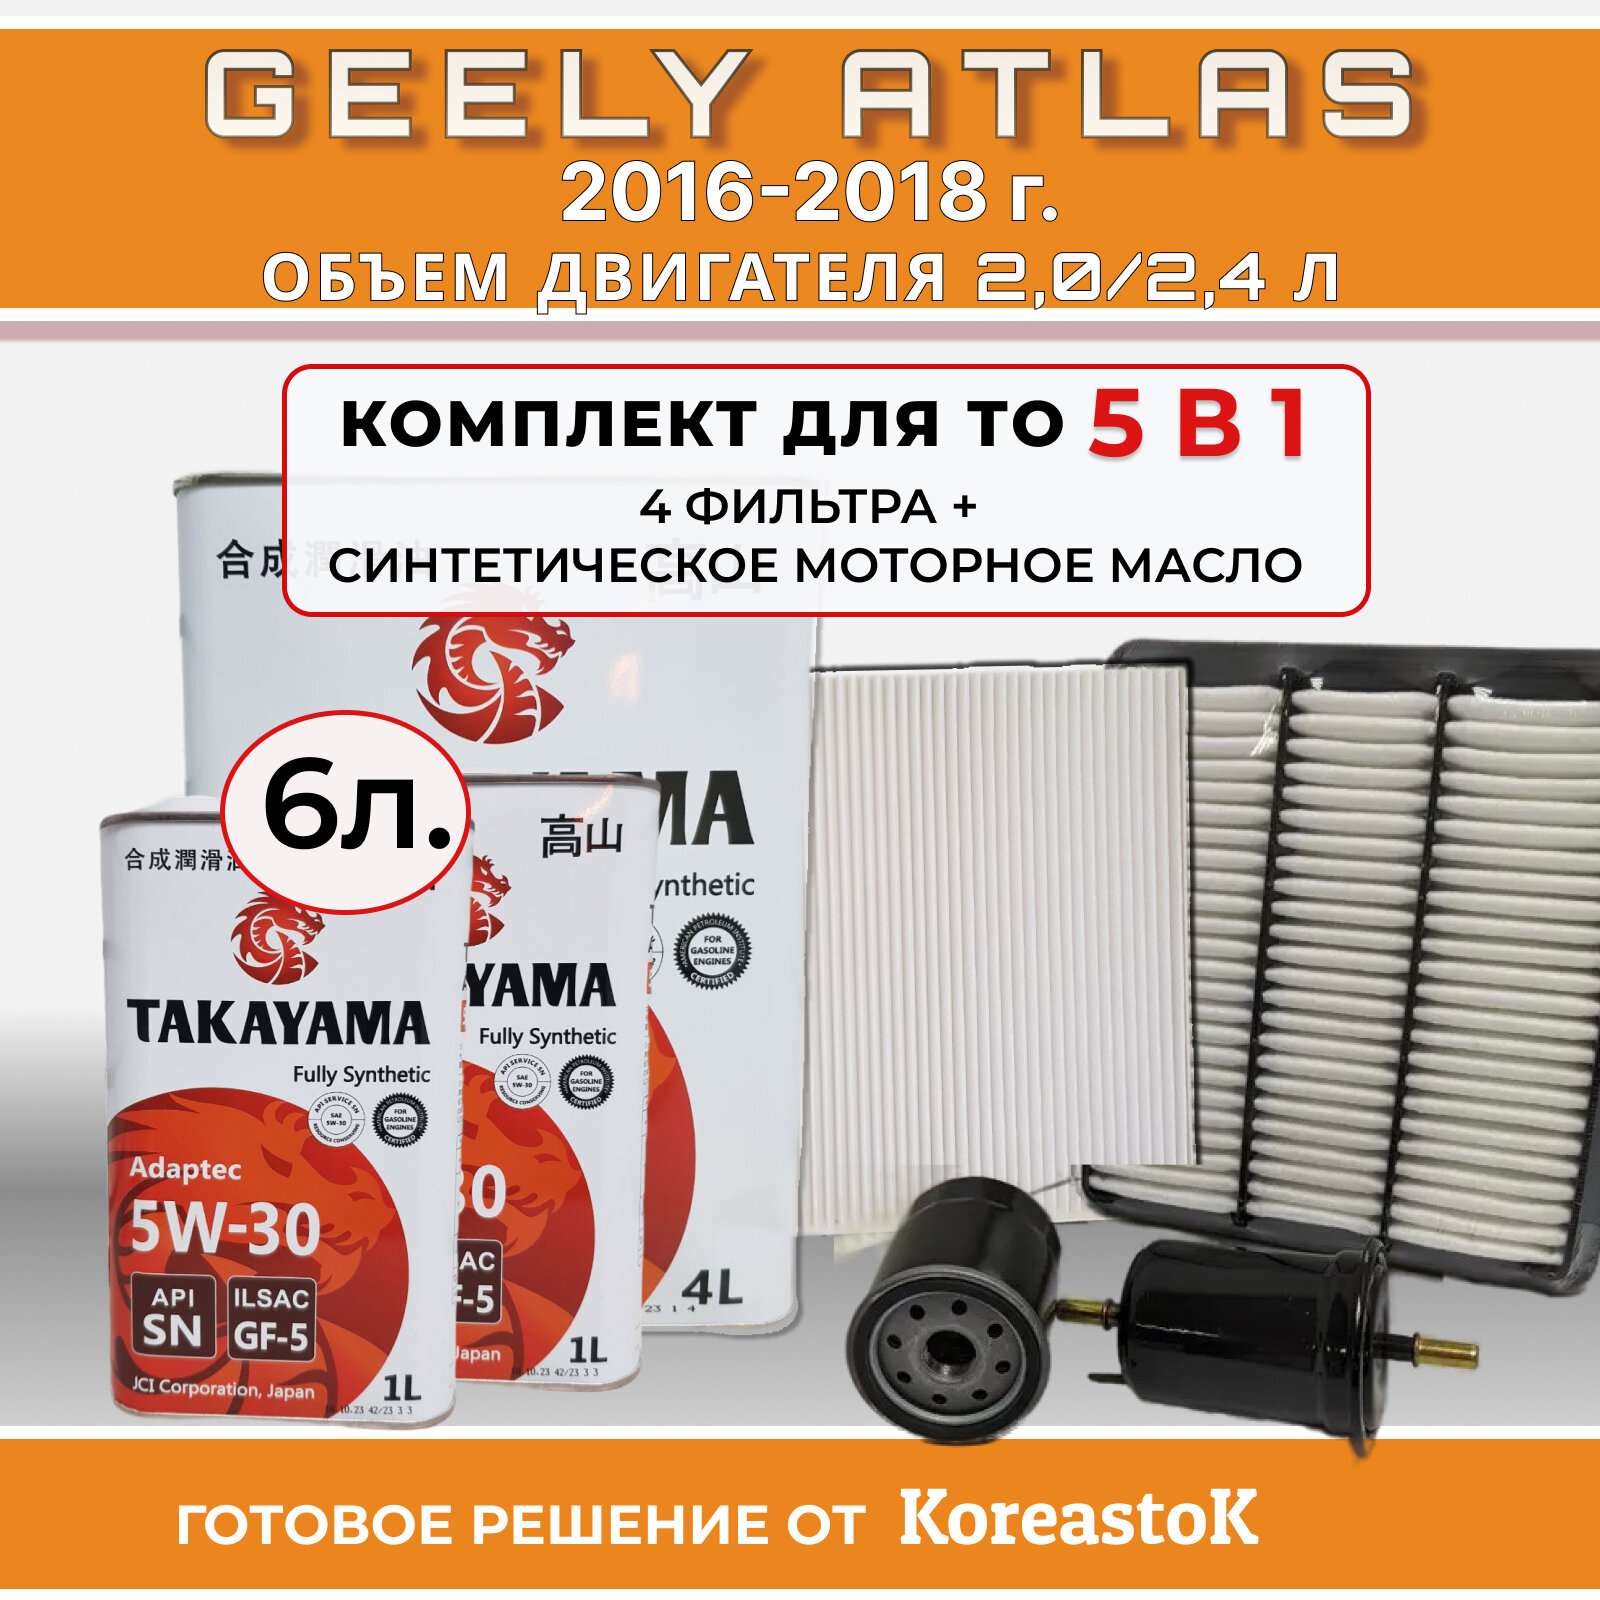 Комплект из 4-х фильтров для Geely Atlas 2016-2018 + синтетическое моторное масло Takayama 6л.